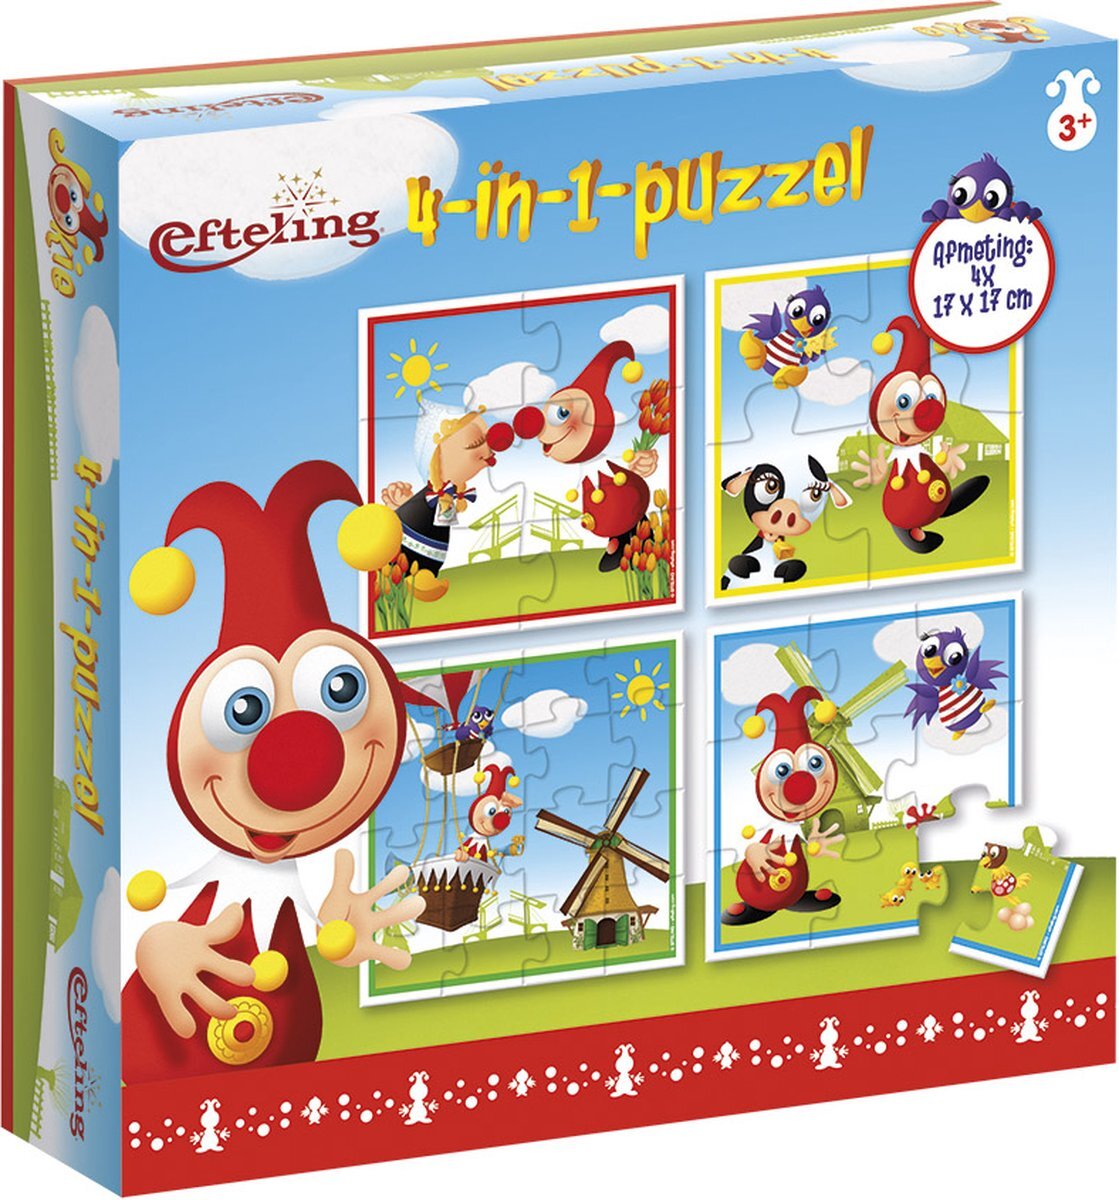 Bambolino Toys - Jokie 4 in 1 puzzel - 4x6x9x16 stukjes - Efteling - kinderpuzzel - leren puzzelen - educatief peuter speelgoed - puzzel 3 jaar en ouder